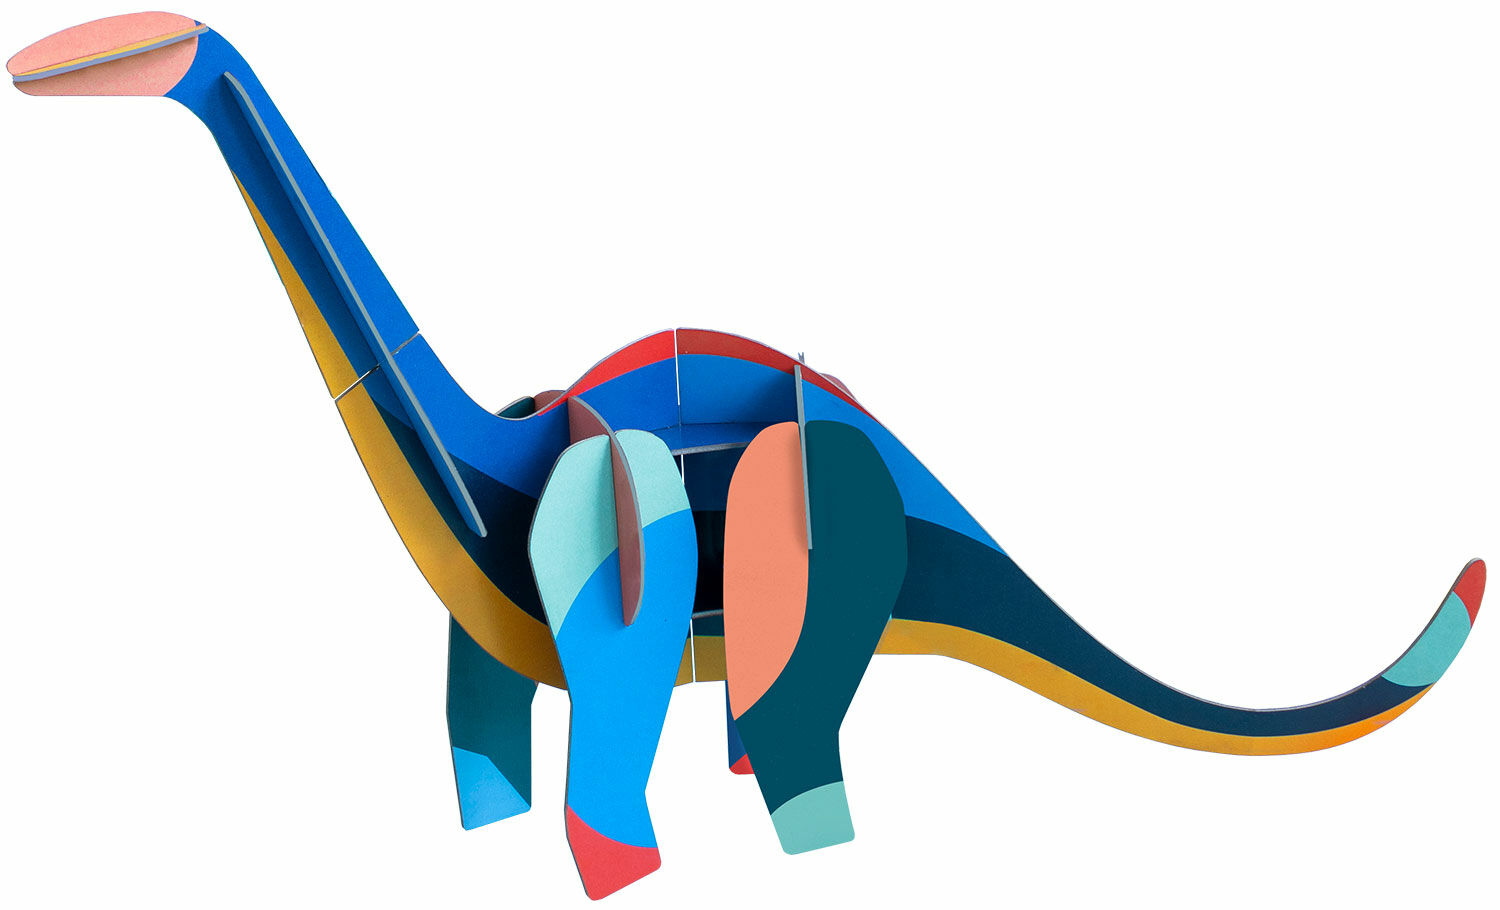 3D object "Giant Diplodocus" gemaakt van gerecycled karton, DIY von studio ROOF